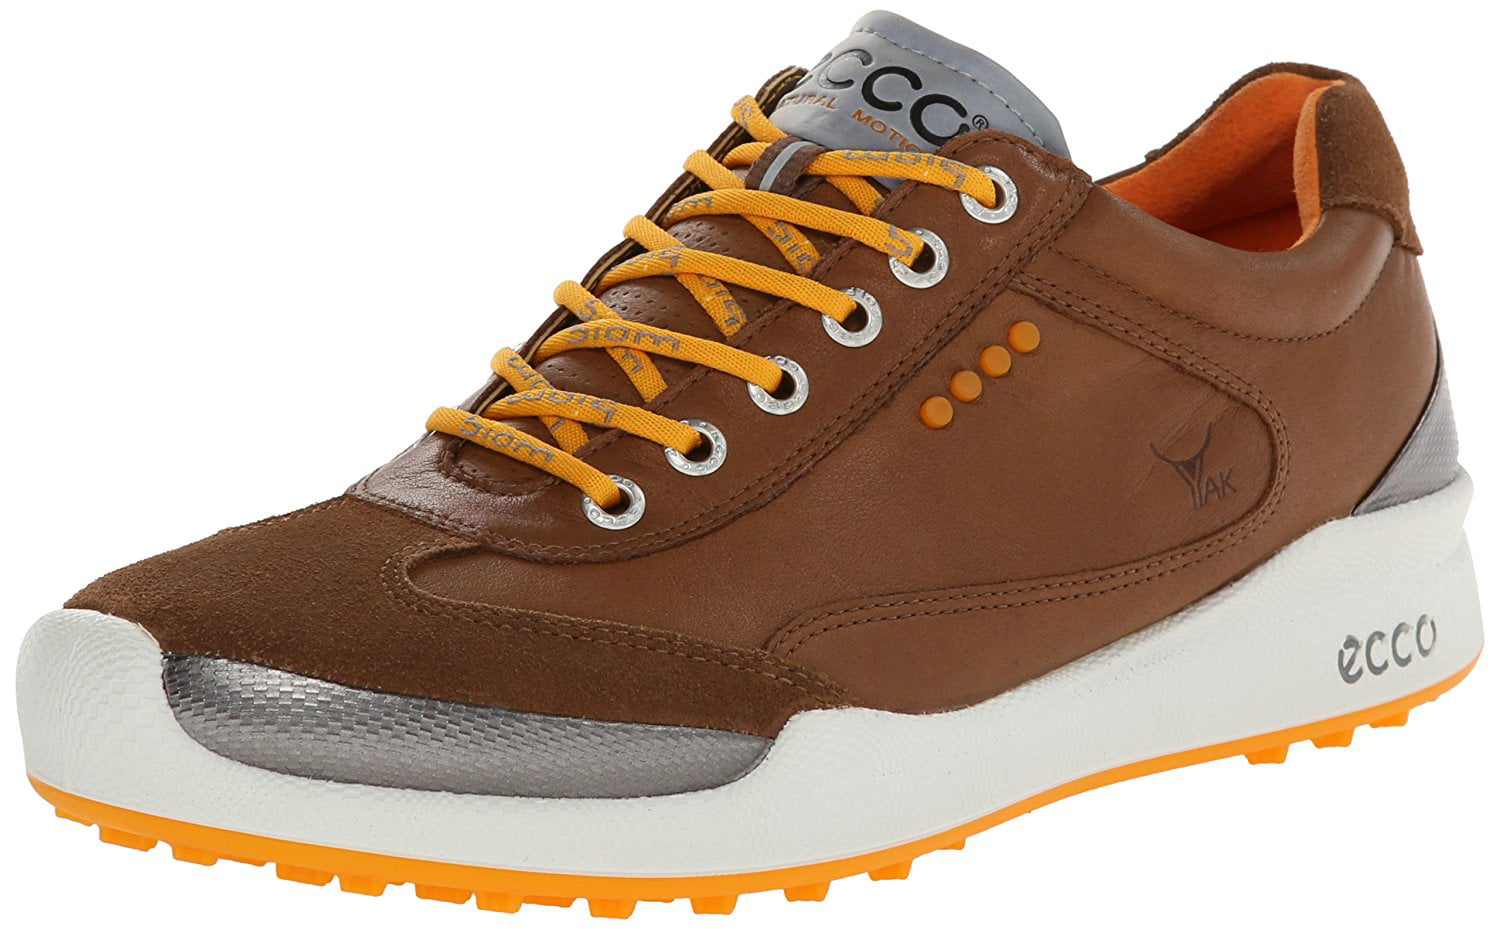 ECCO Men's Biom Hybrid 2 Golf Shoes Camel/Fanta Size 45.0 EU / 11-11.5M ...